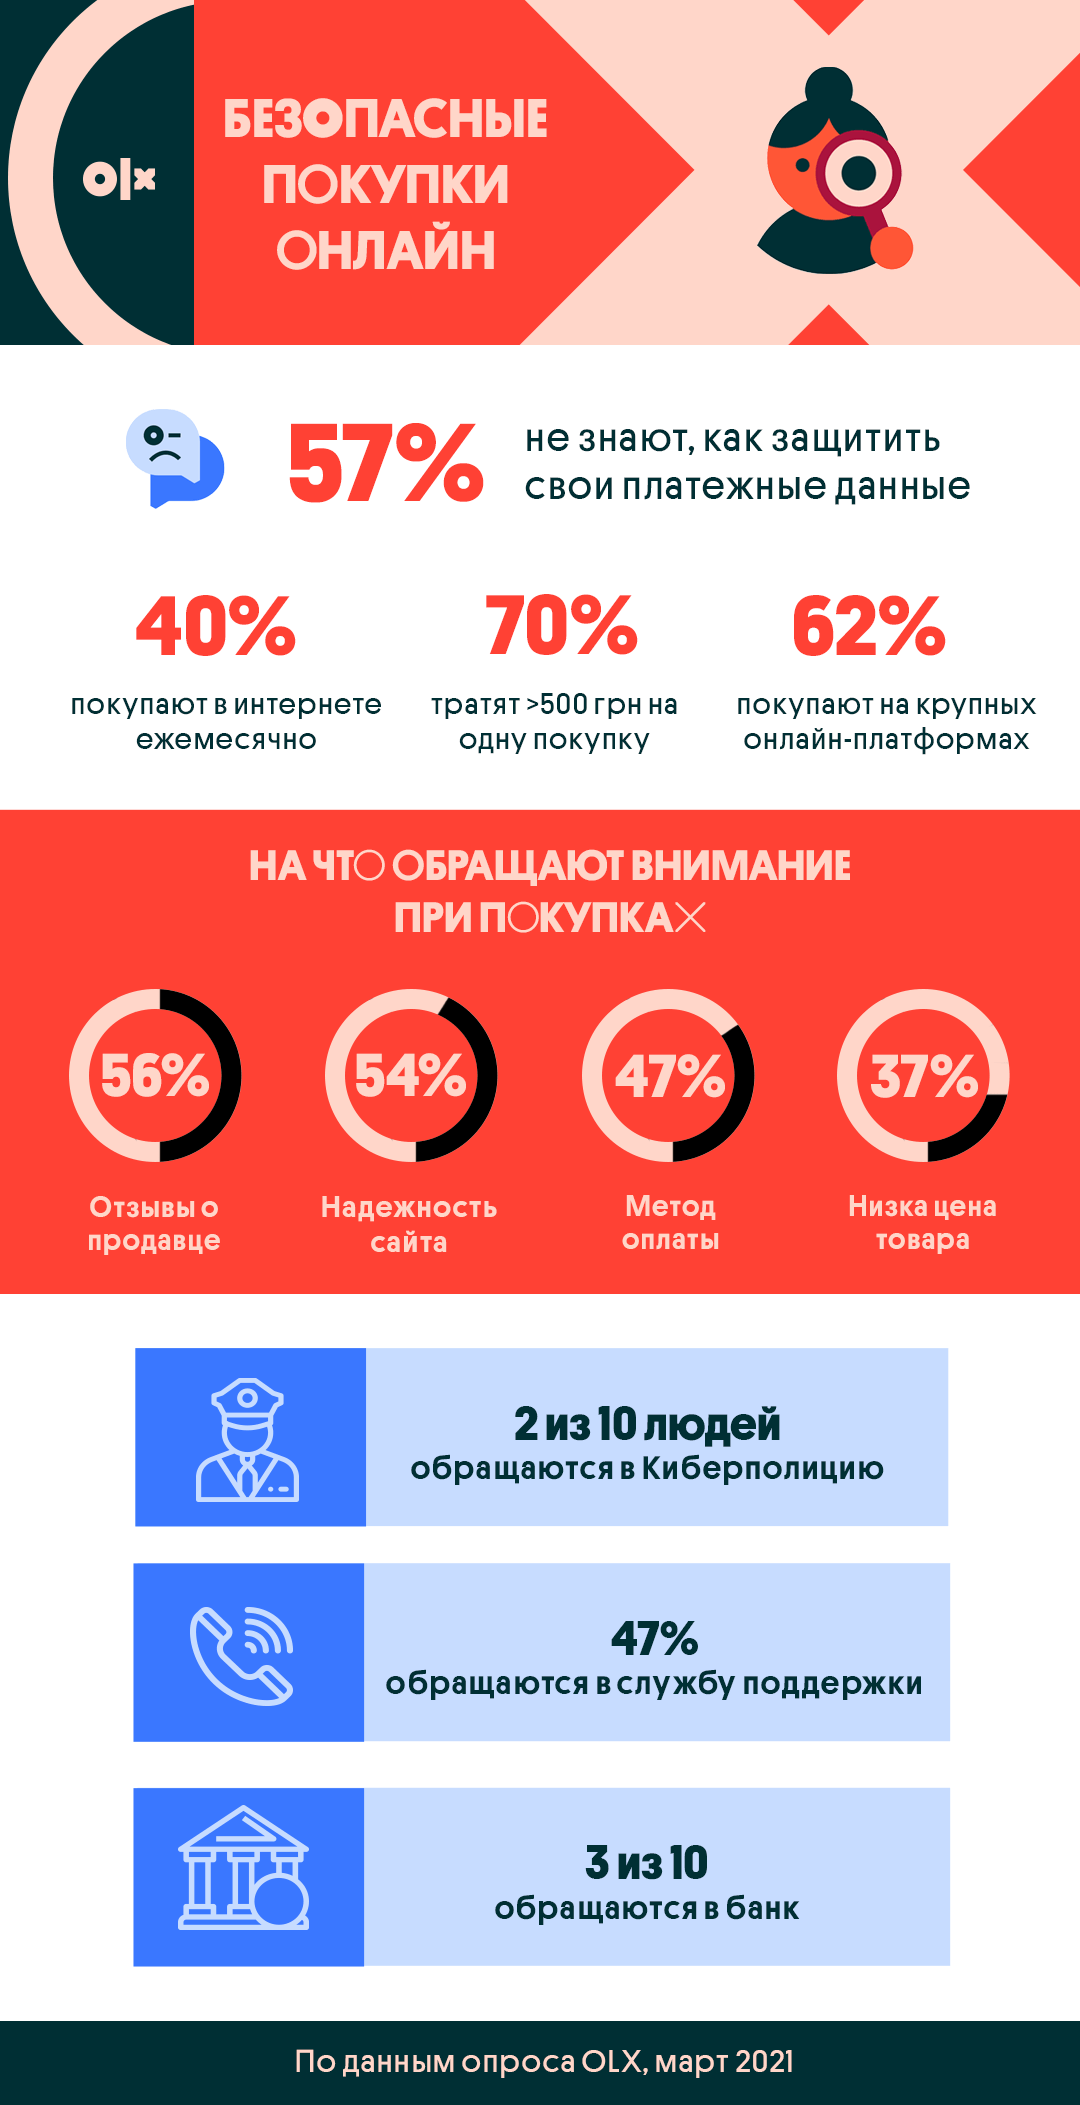 Каждый третий украинец тратит более тысячи гривен за раз во время онлайн-шопинга, однако 57% не знают, как защитить свои данные